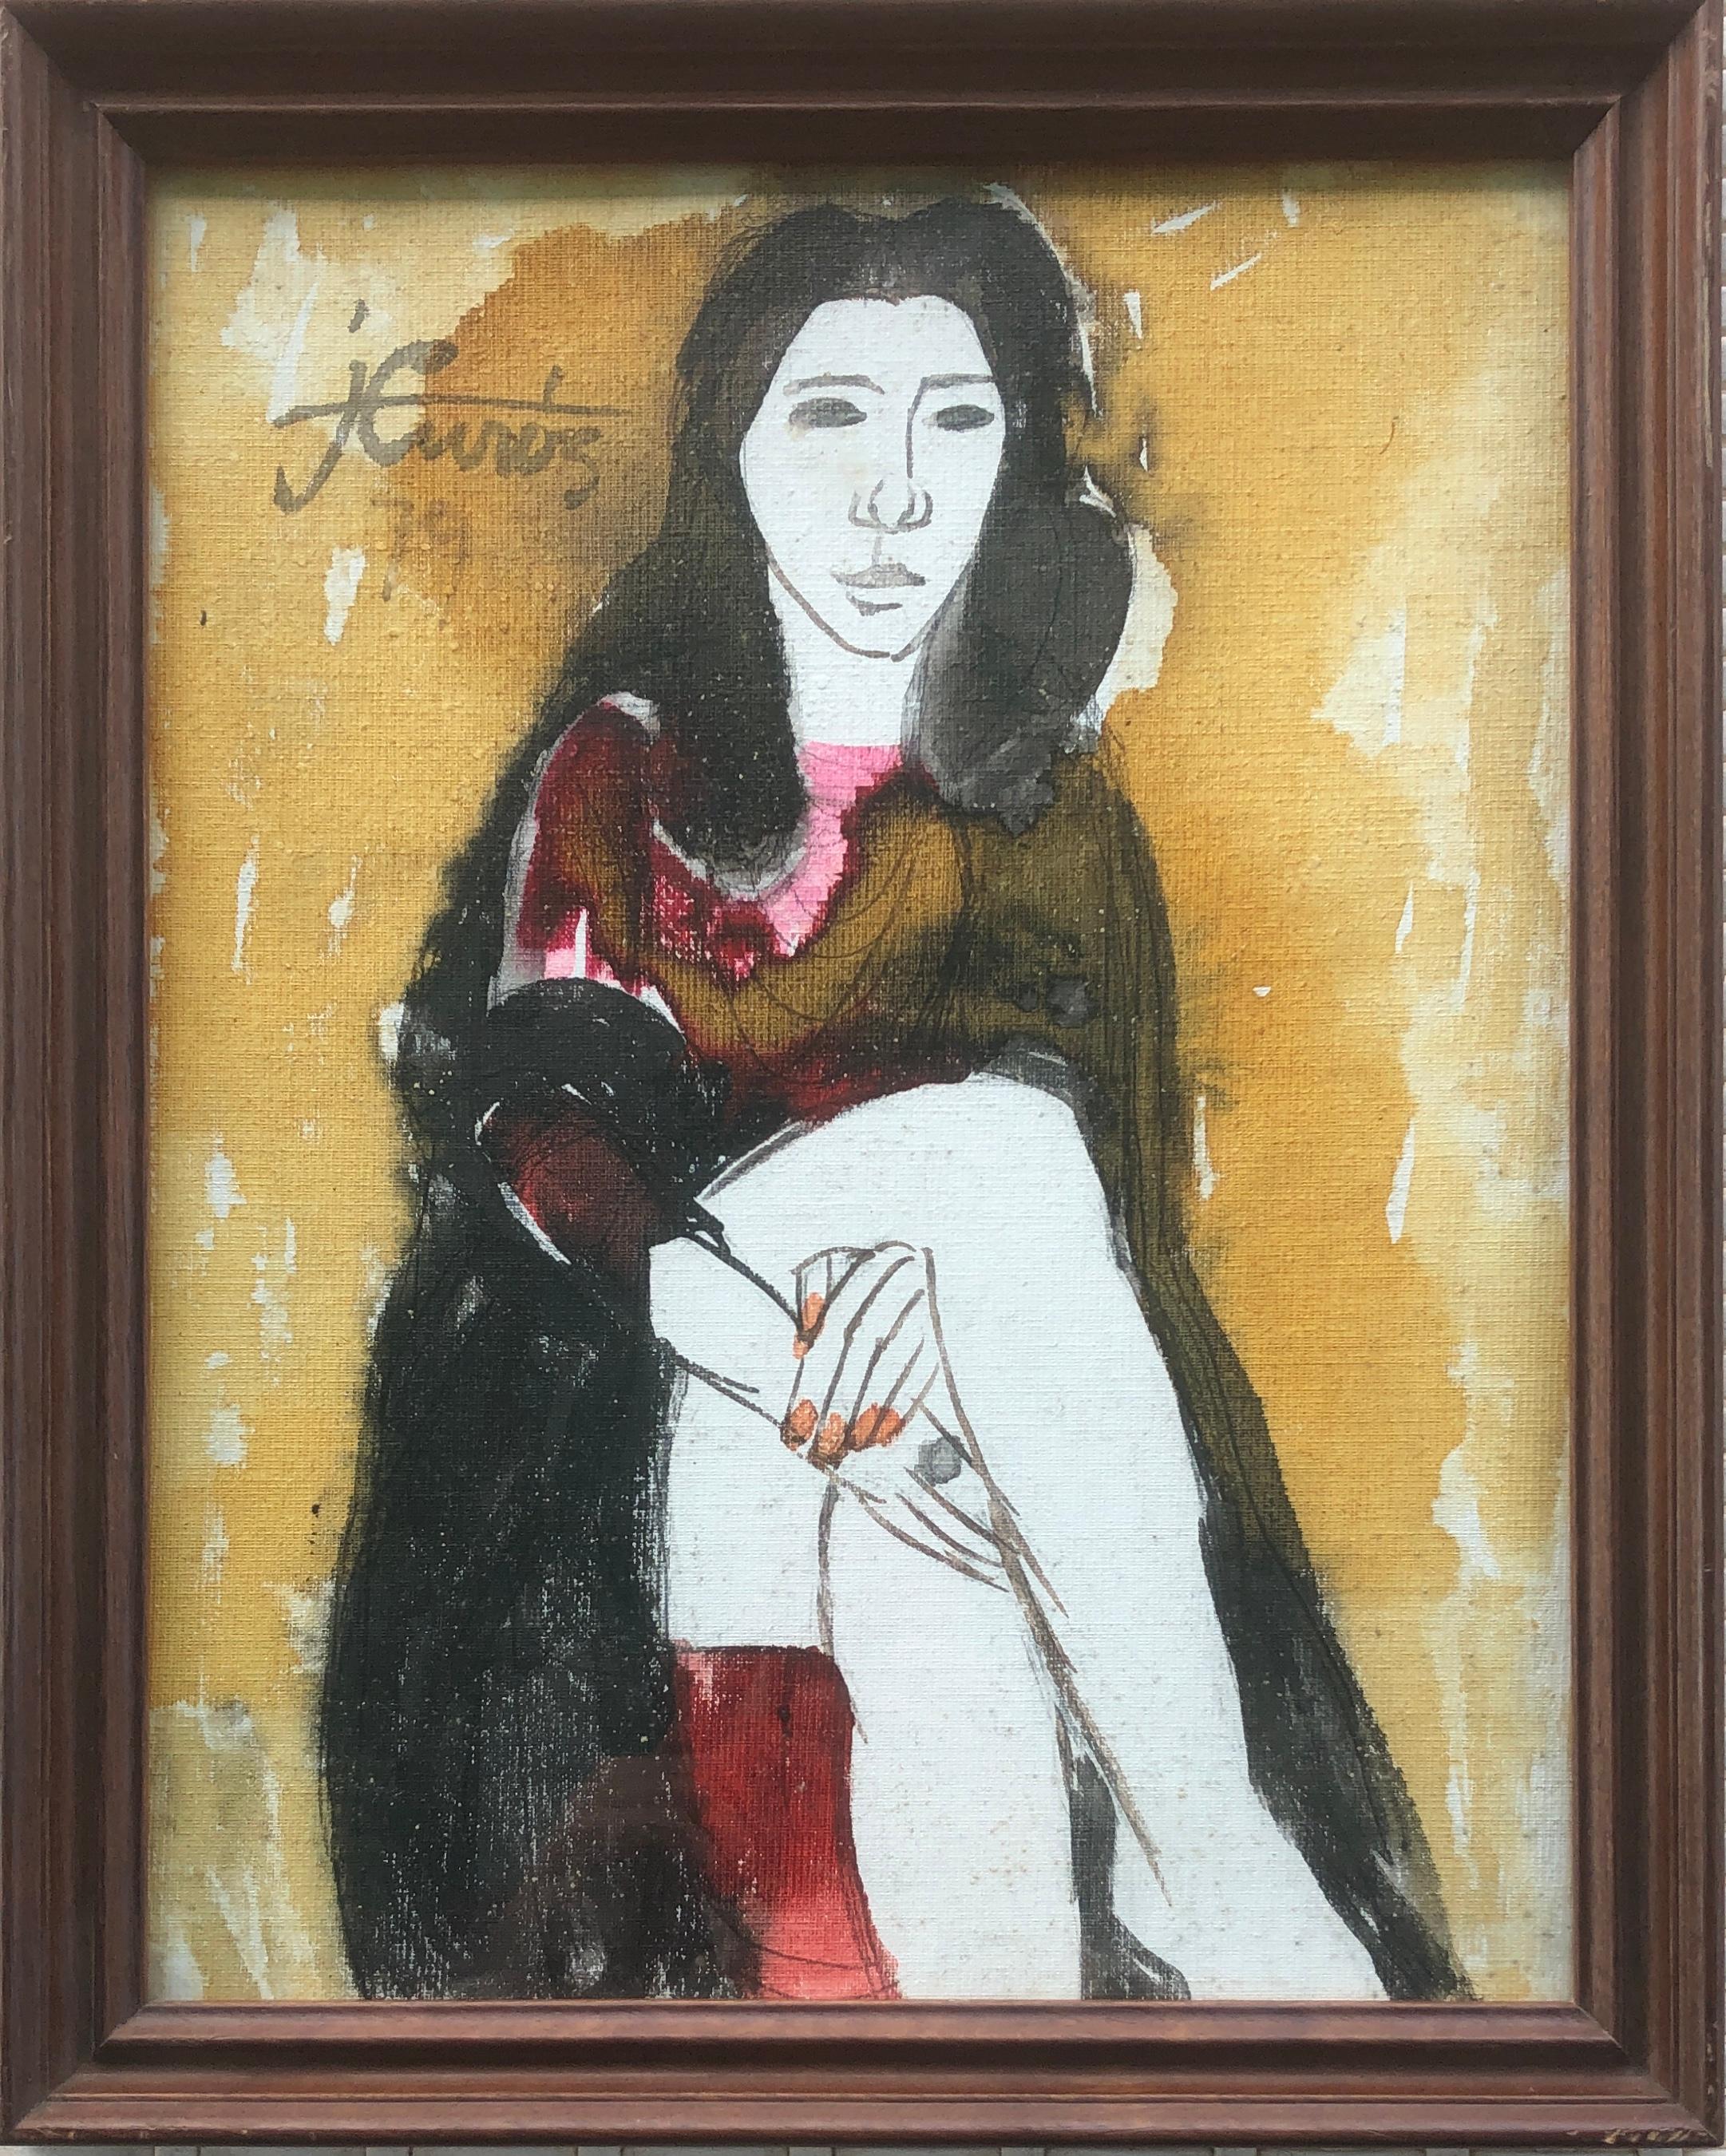 Frau posiert in Mischtechnik Gemälde – Painting von Jordi Curos